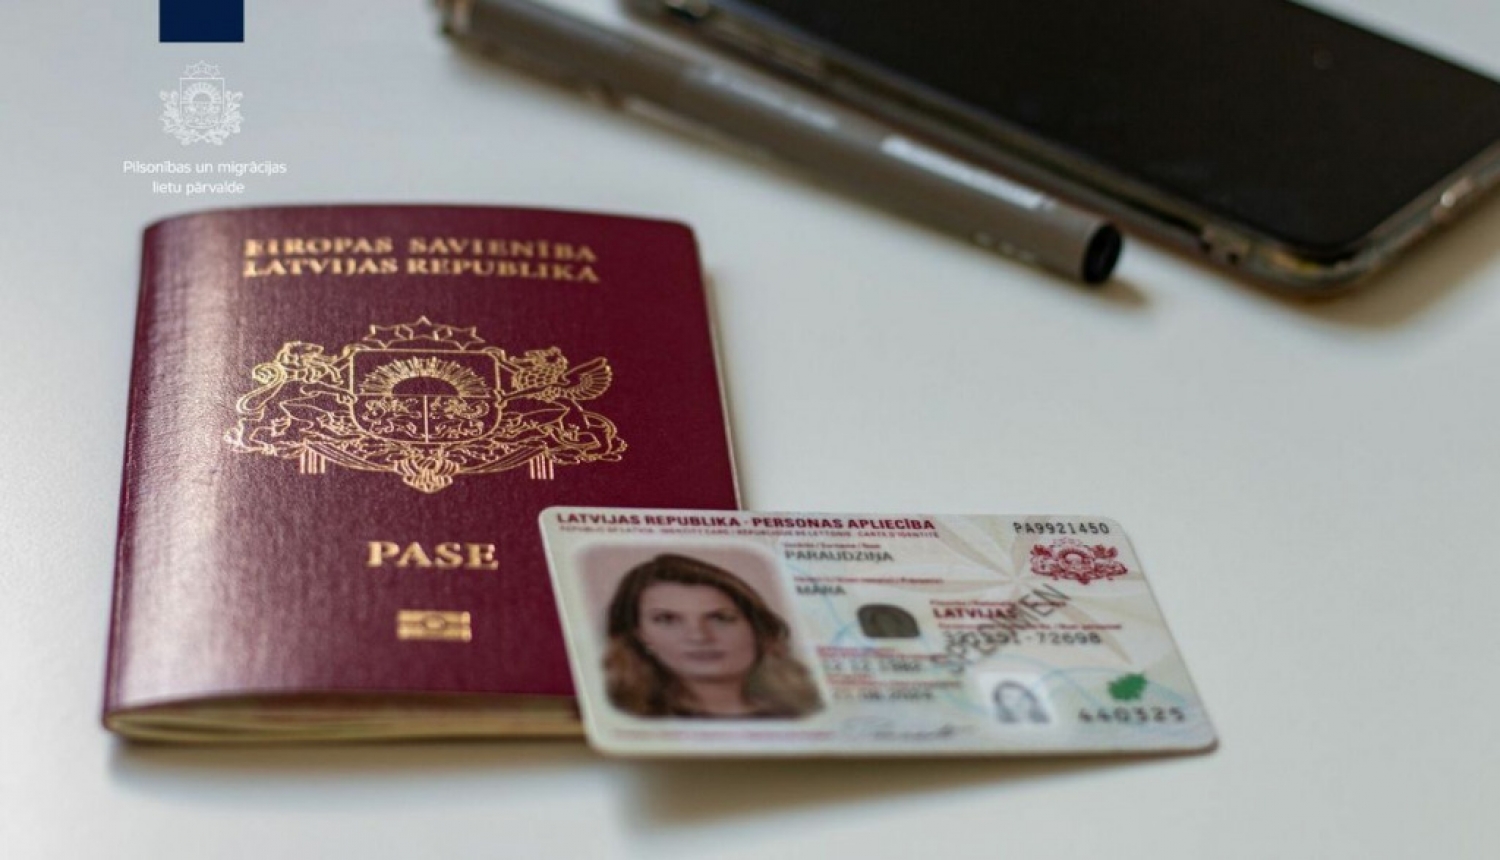 Personas apliecība jeb eID karte būs obligāta tad, kad beigsies pases derīguma termiņš